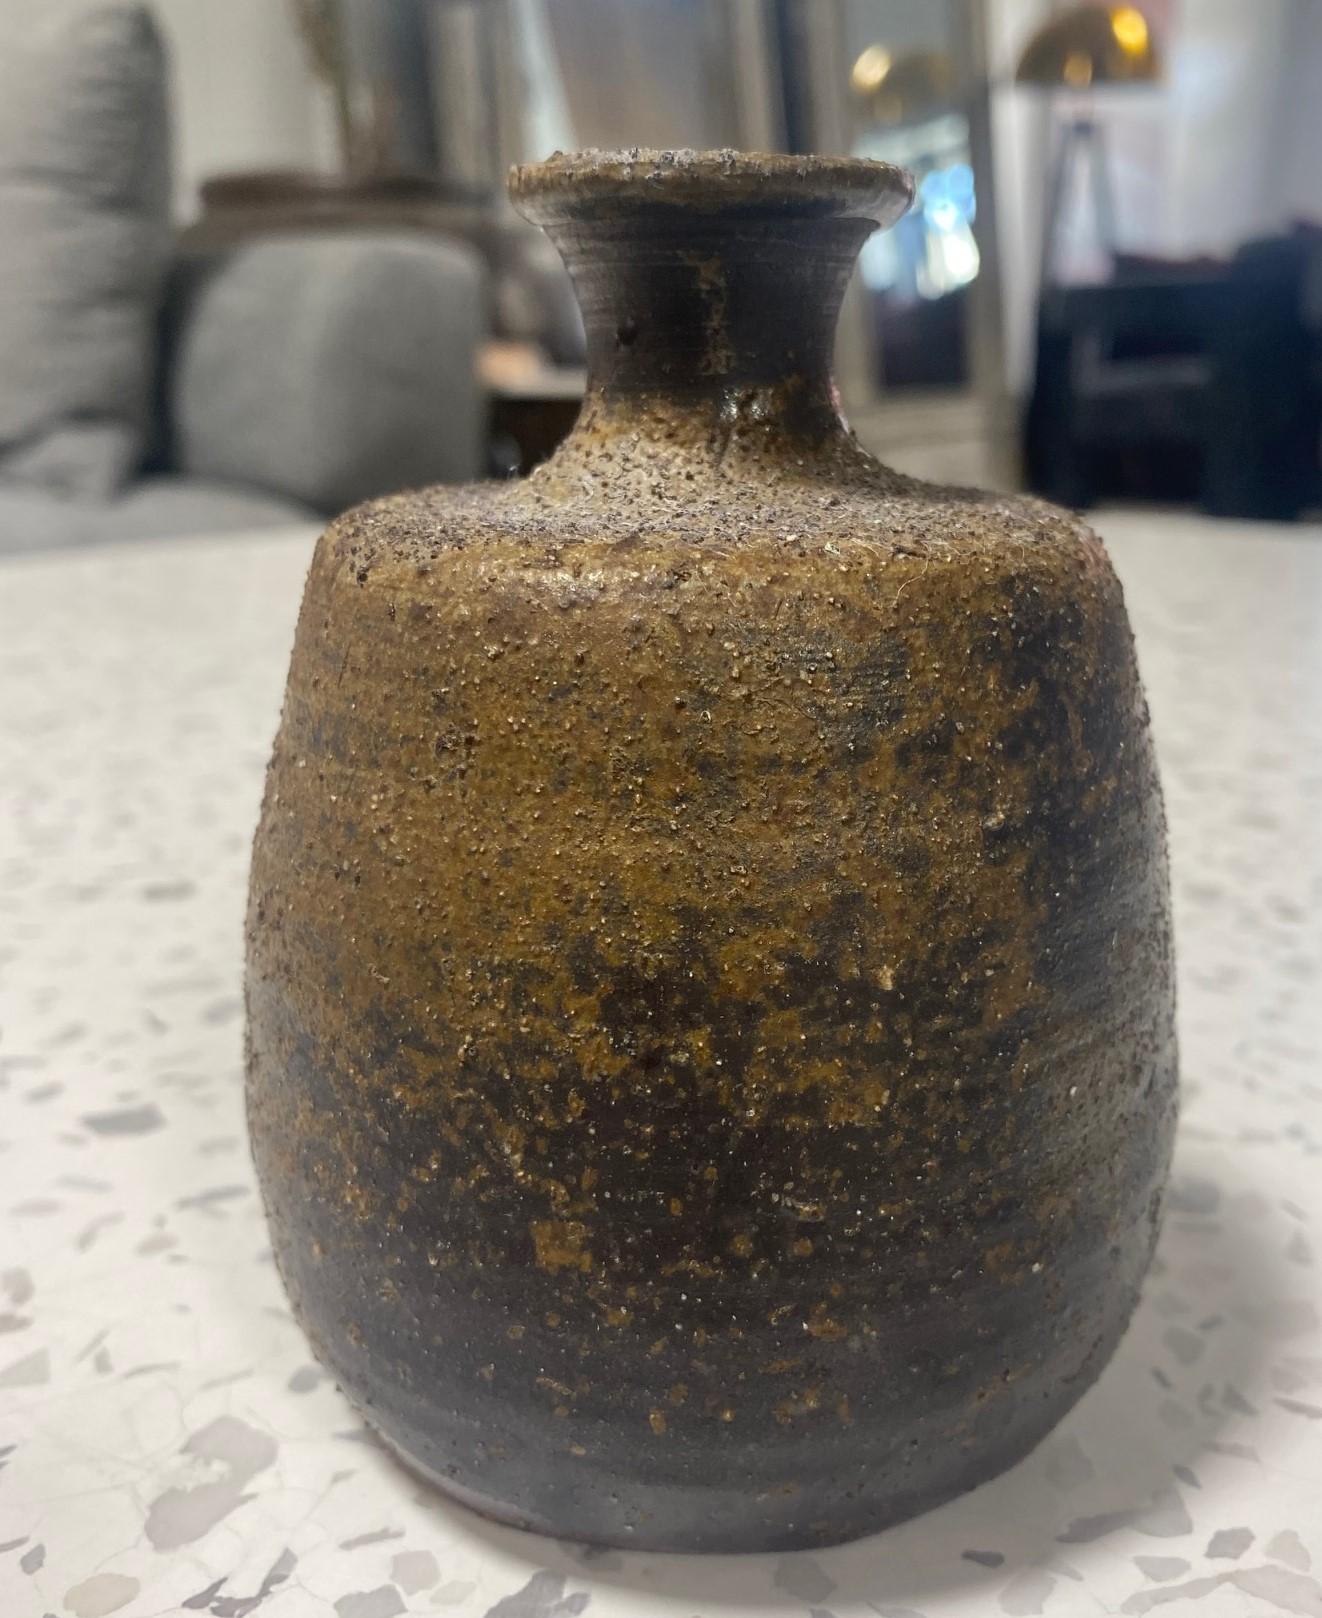 Showa Kaneshige Toyo National Treasure Signed Japanese Bizen Pottery Sake Bottle Vase For Sale